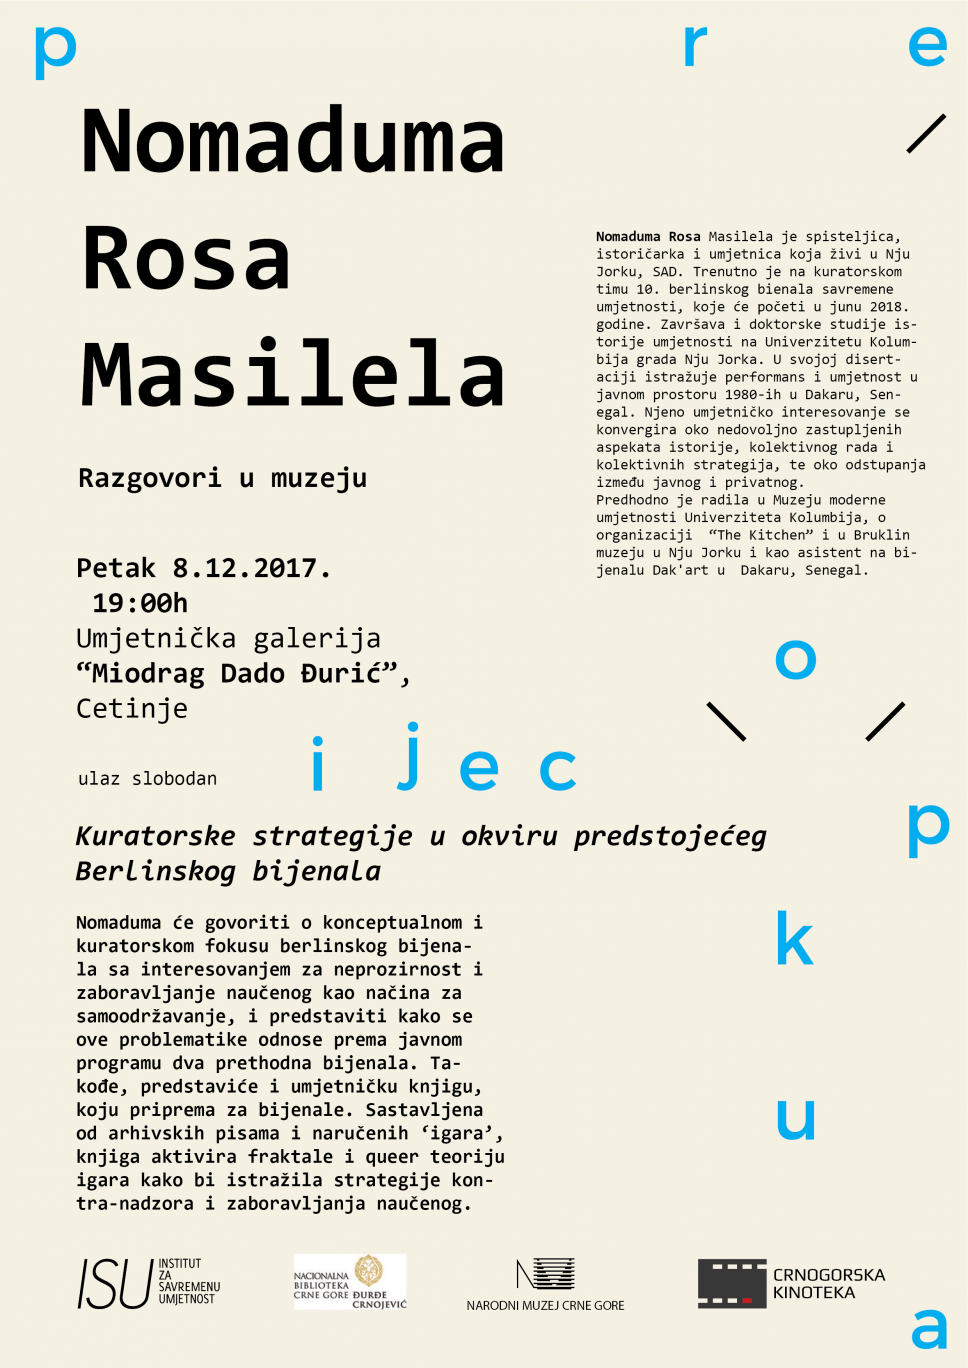 Program Prokupacije - Nomaduma Rosa Masilelai  